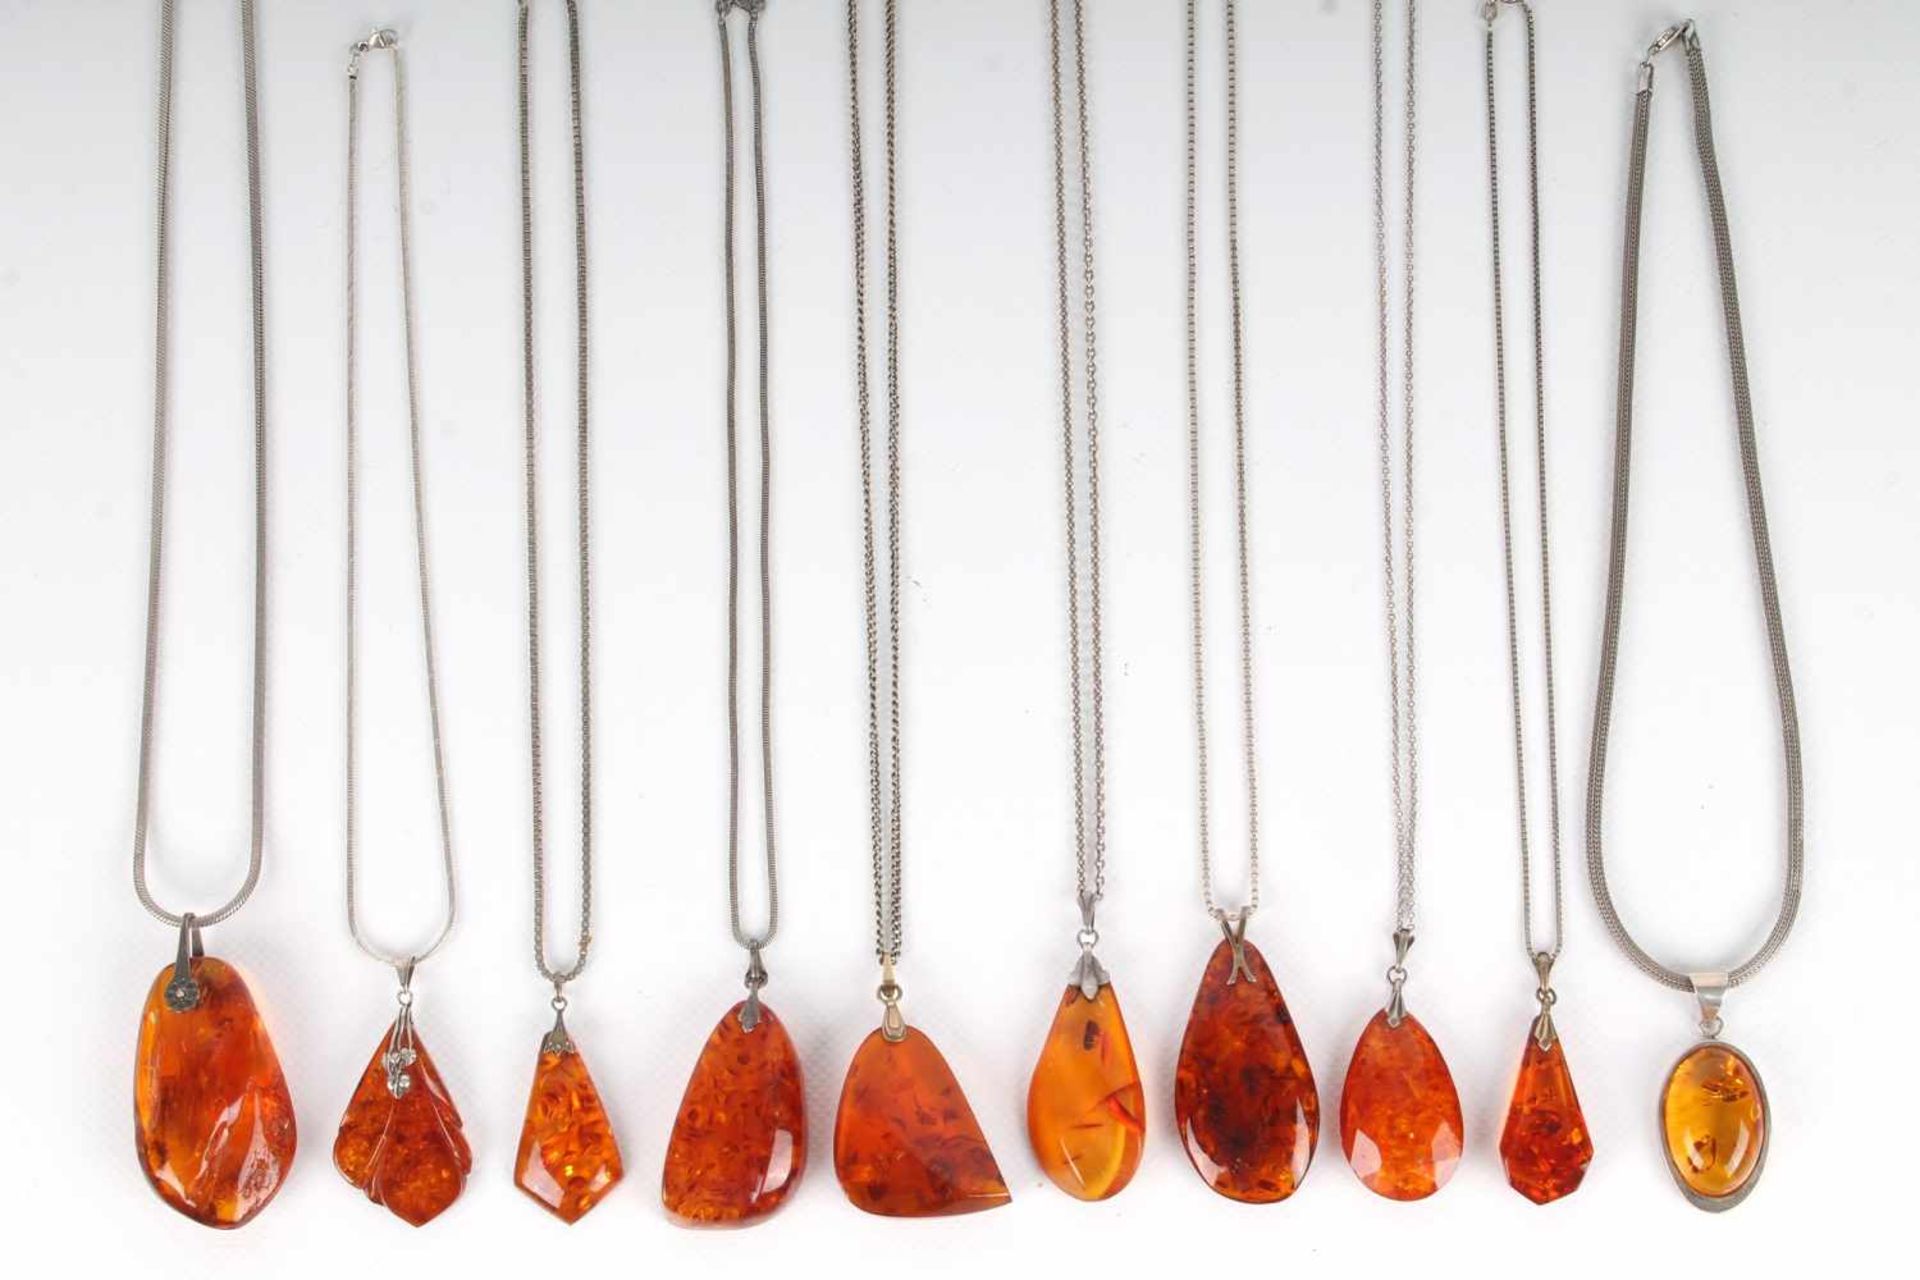 10 Bernsteinanhänger mit Silberketten, 10 amber pendants with silver chains,